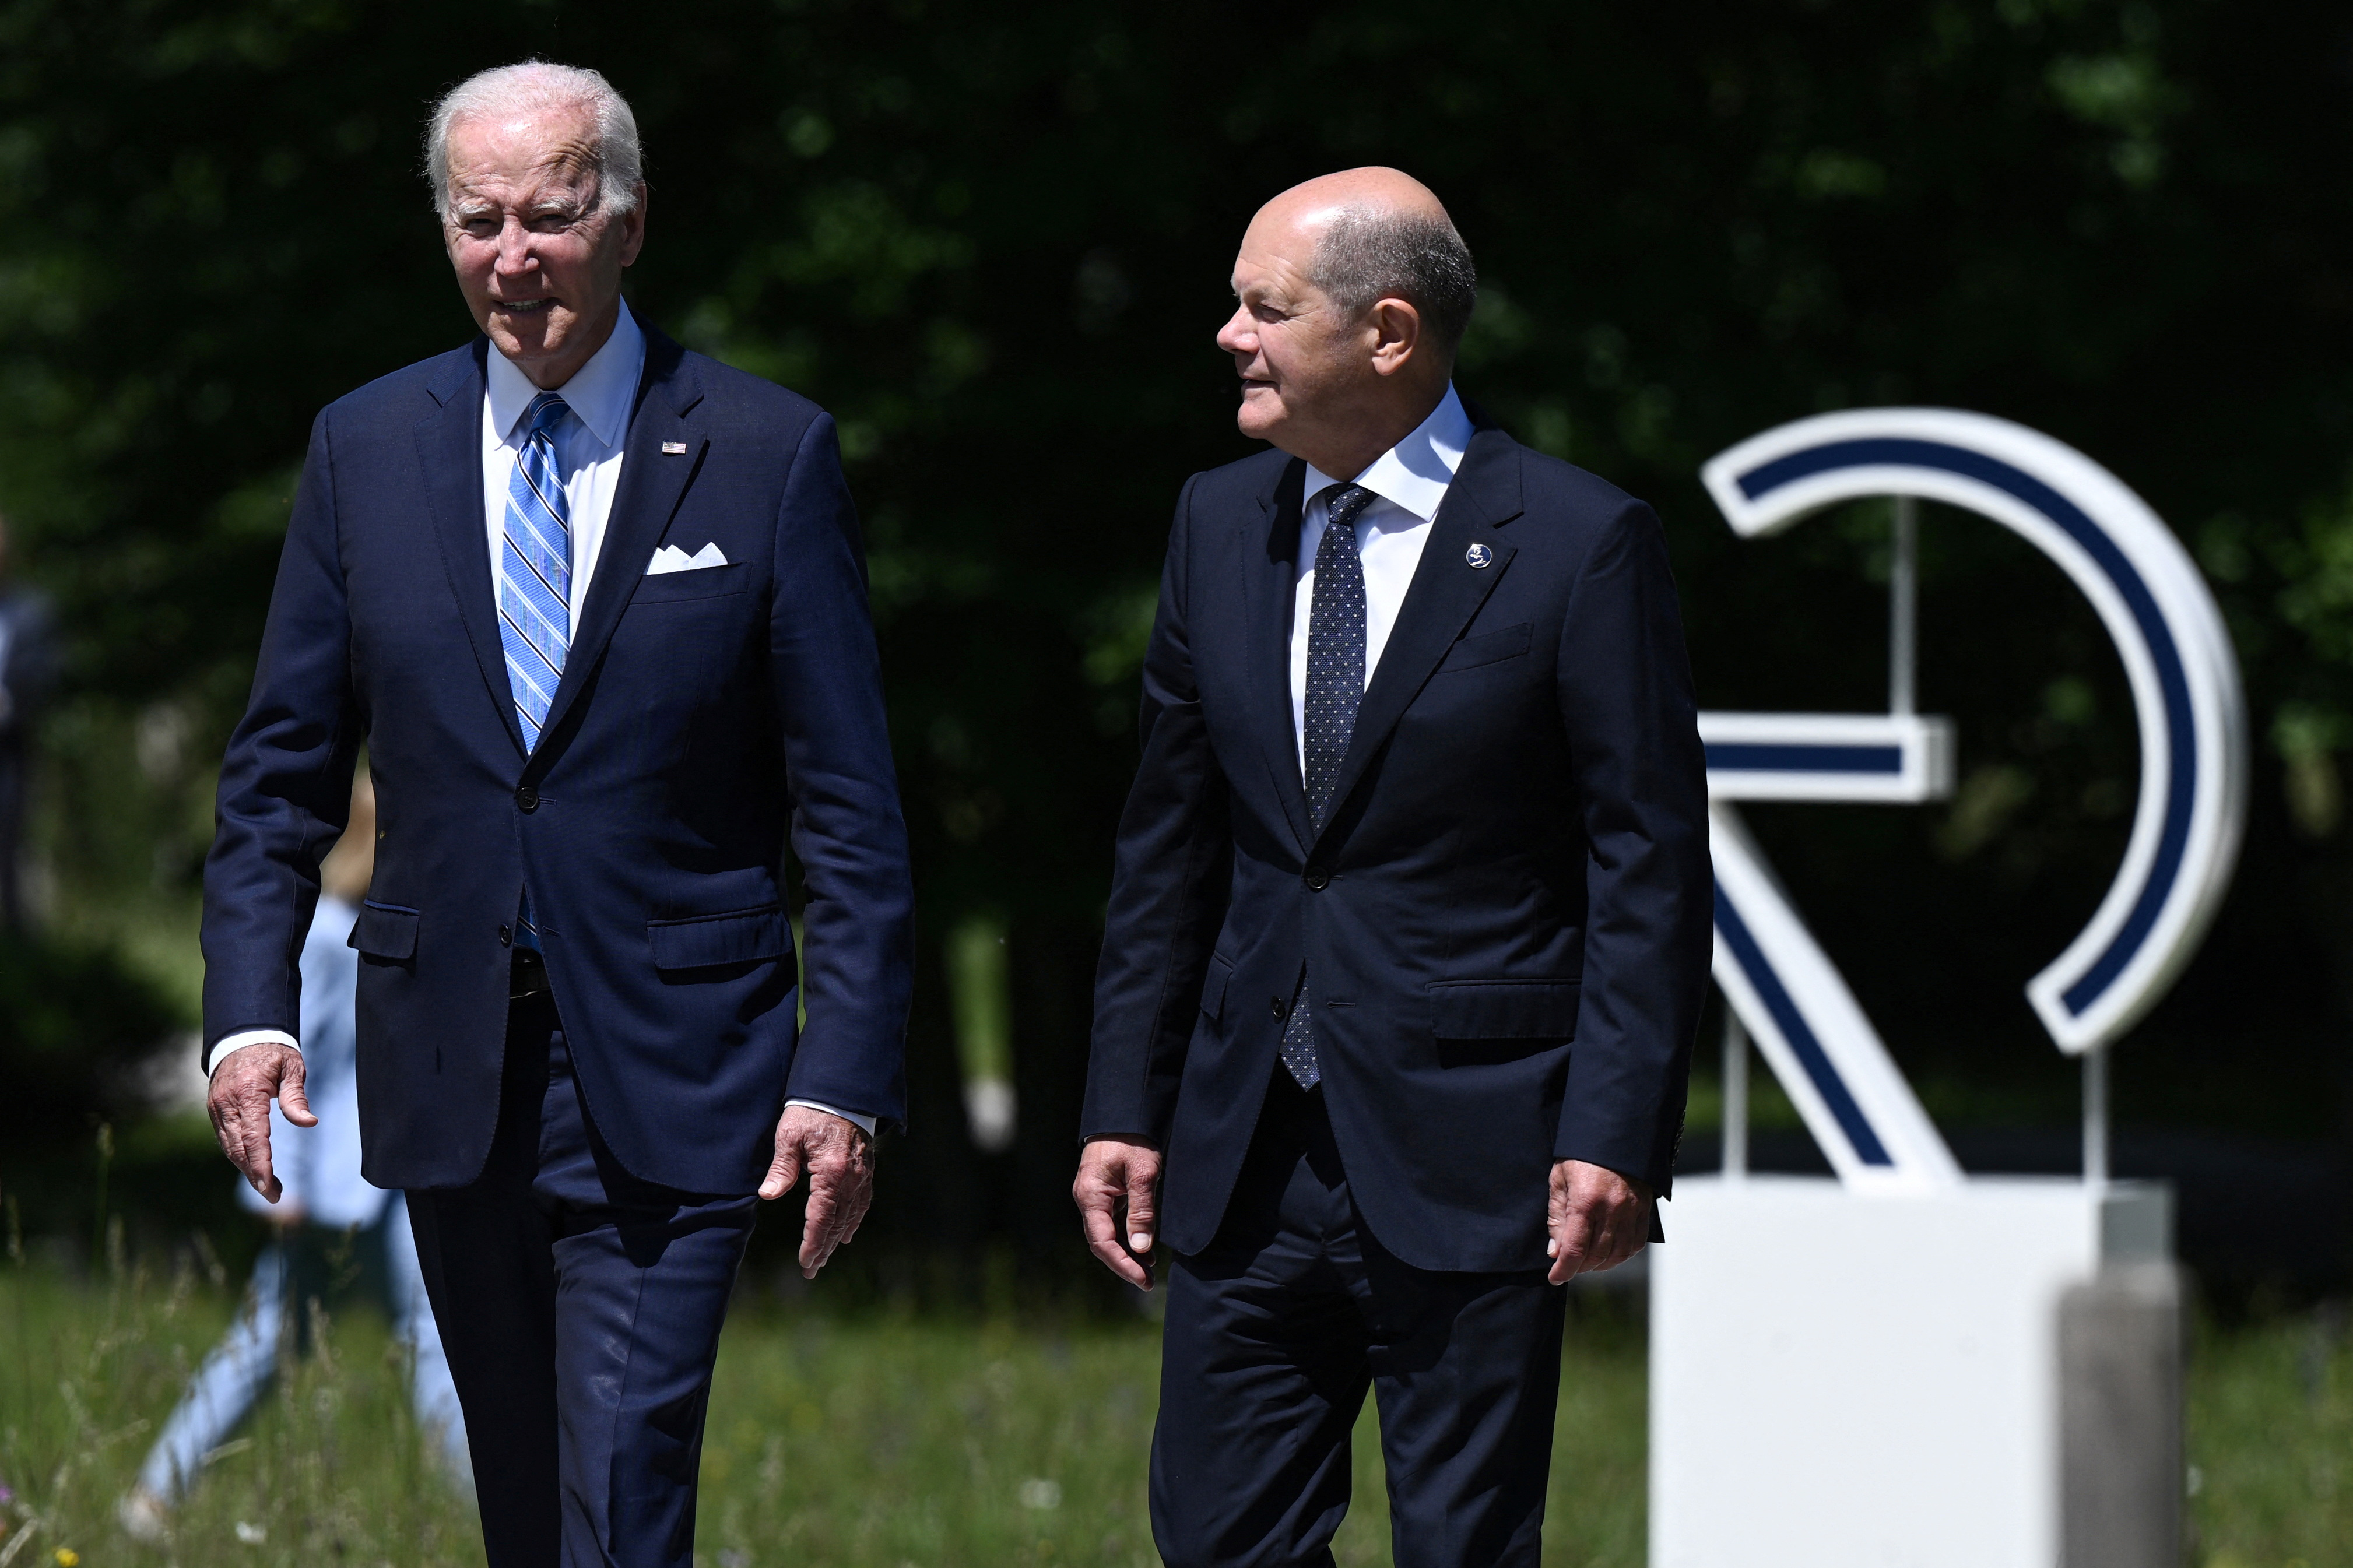 El presidente de Estados Unidos, Joe Biden, y el canciller alemán, Olaf Scholz, conversan a su llegada al inicio de la Cumbre del G7 en el castillo de Elmau, cerca de Garmisch-Partenkirchen, Alemania, el 26 de junio de 2022. Brendan Smialowski/Pool vía REUTERS